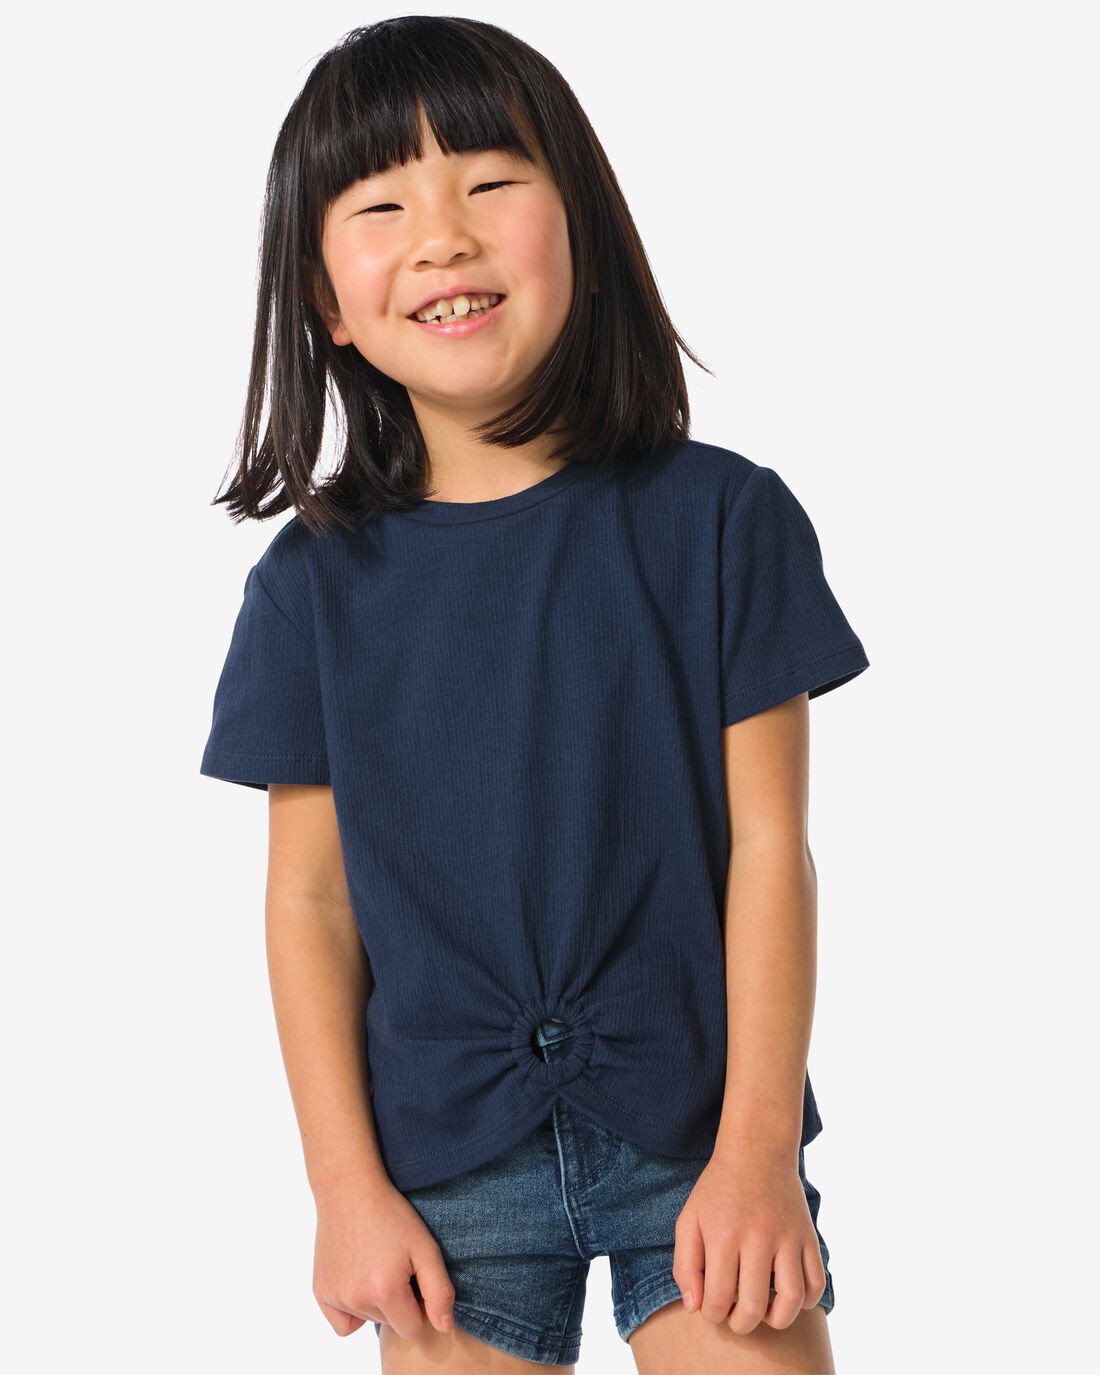 HEMA Kinder T-shirt Met Ring Donkerblauw (donkerblauw)